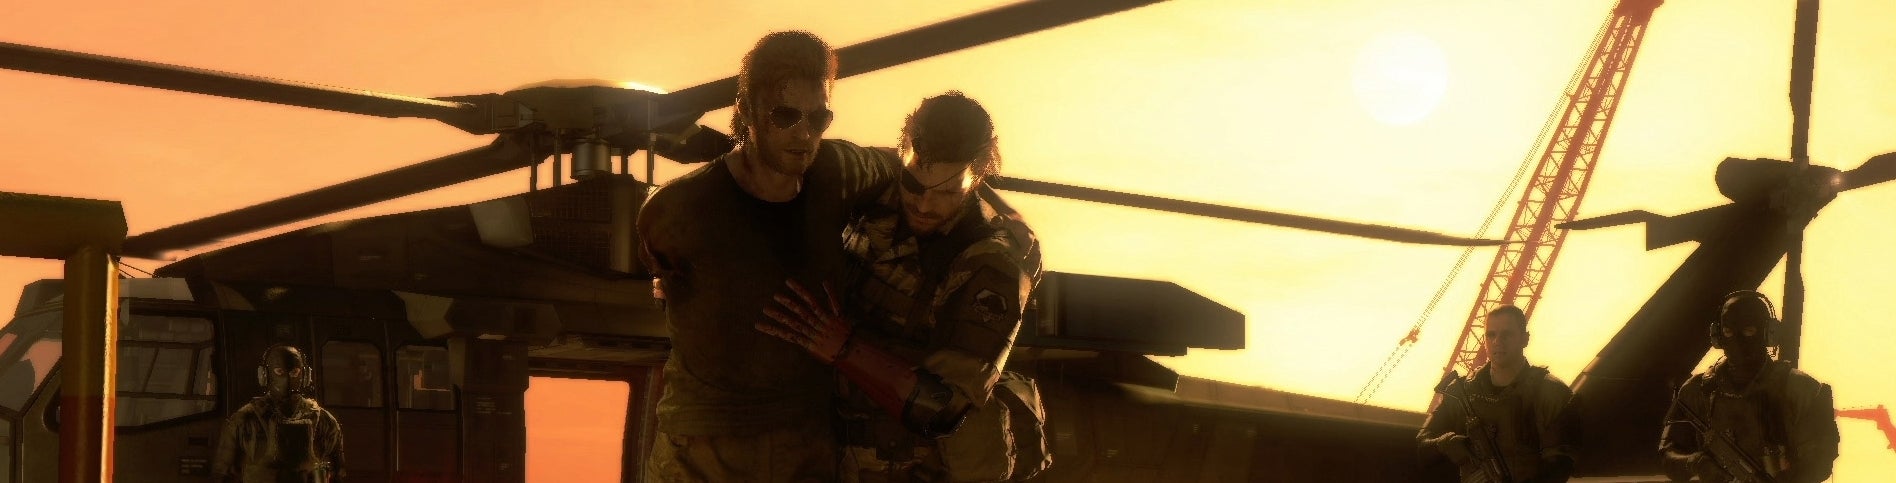 Afbeeldingen van Metal Gear Solid 5 moet op 60 fps draaien op PS4